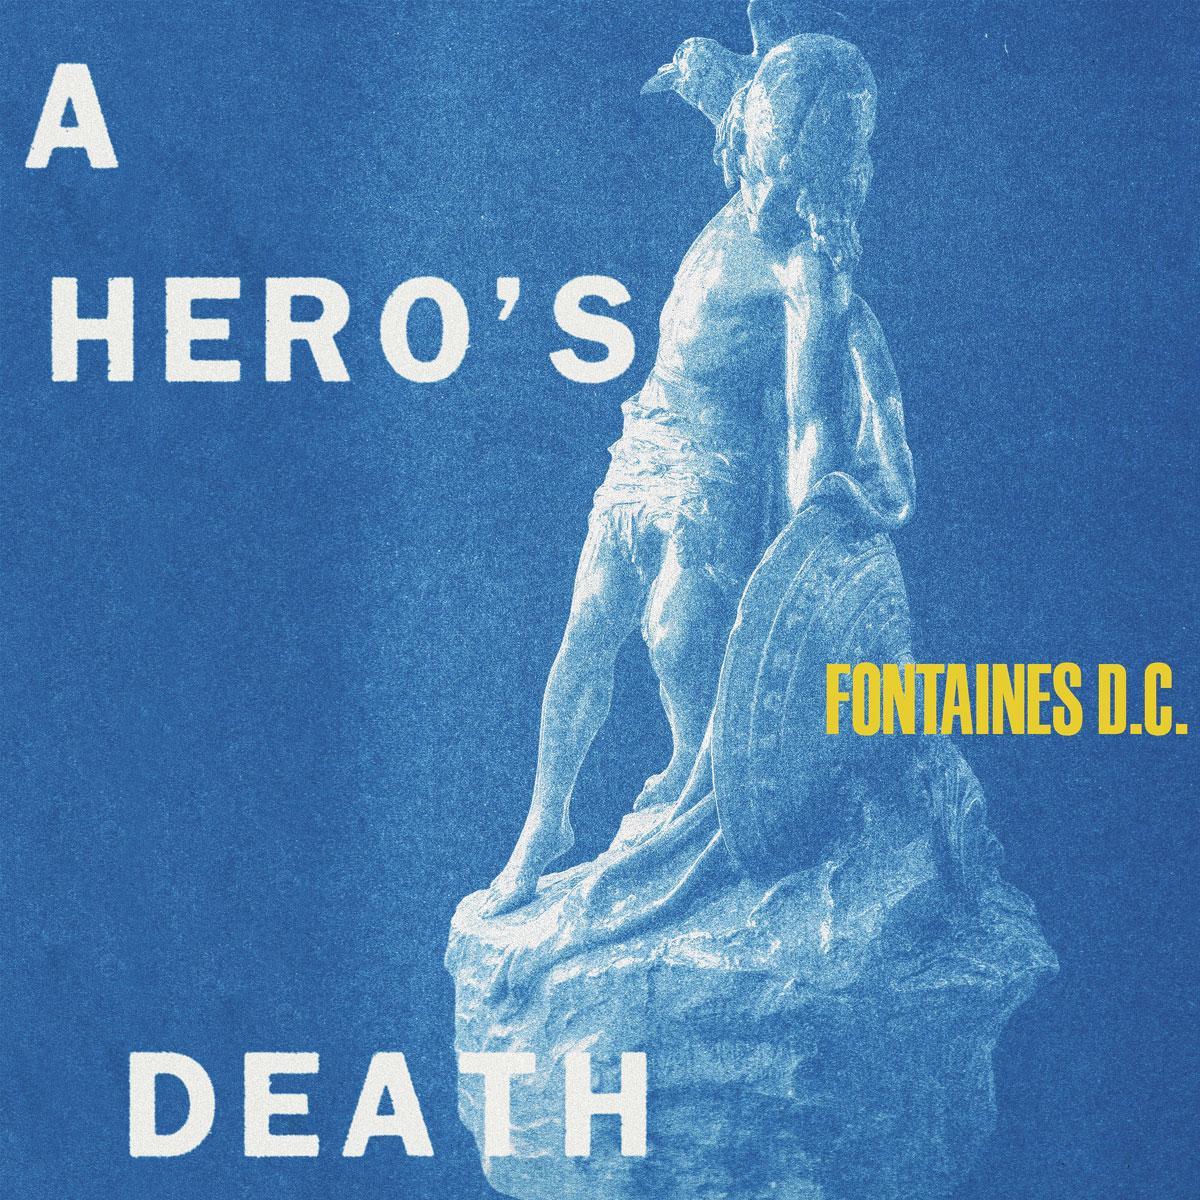 Angst, vervreemding en idolatrie aan diggelen: 'A Hero's Death' van Fontaines D.C.